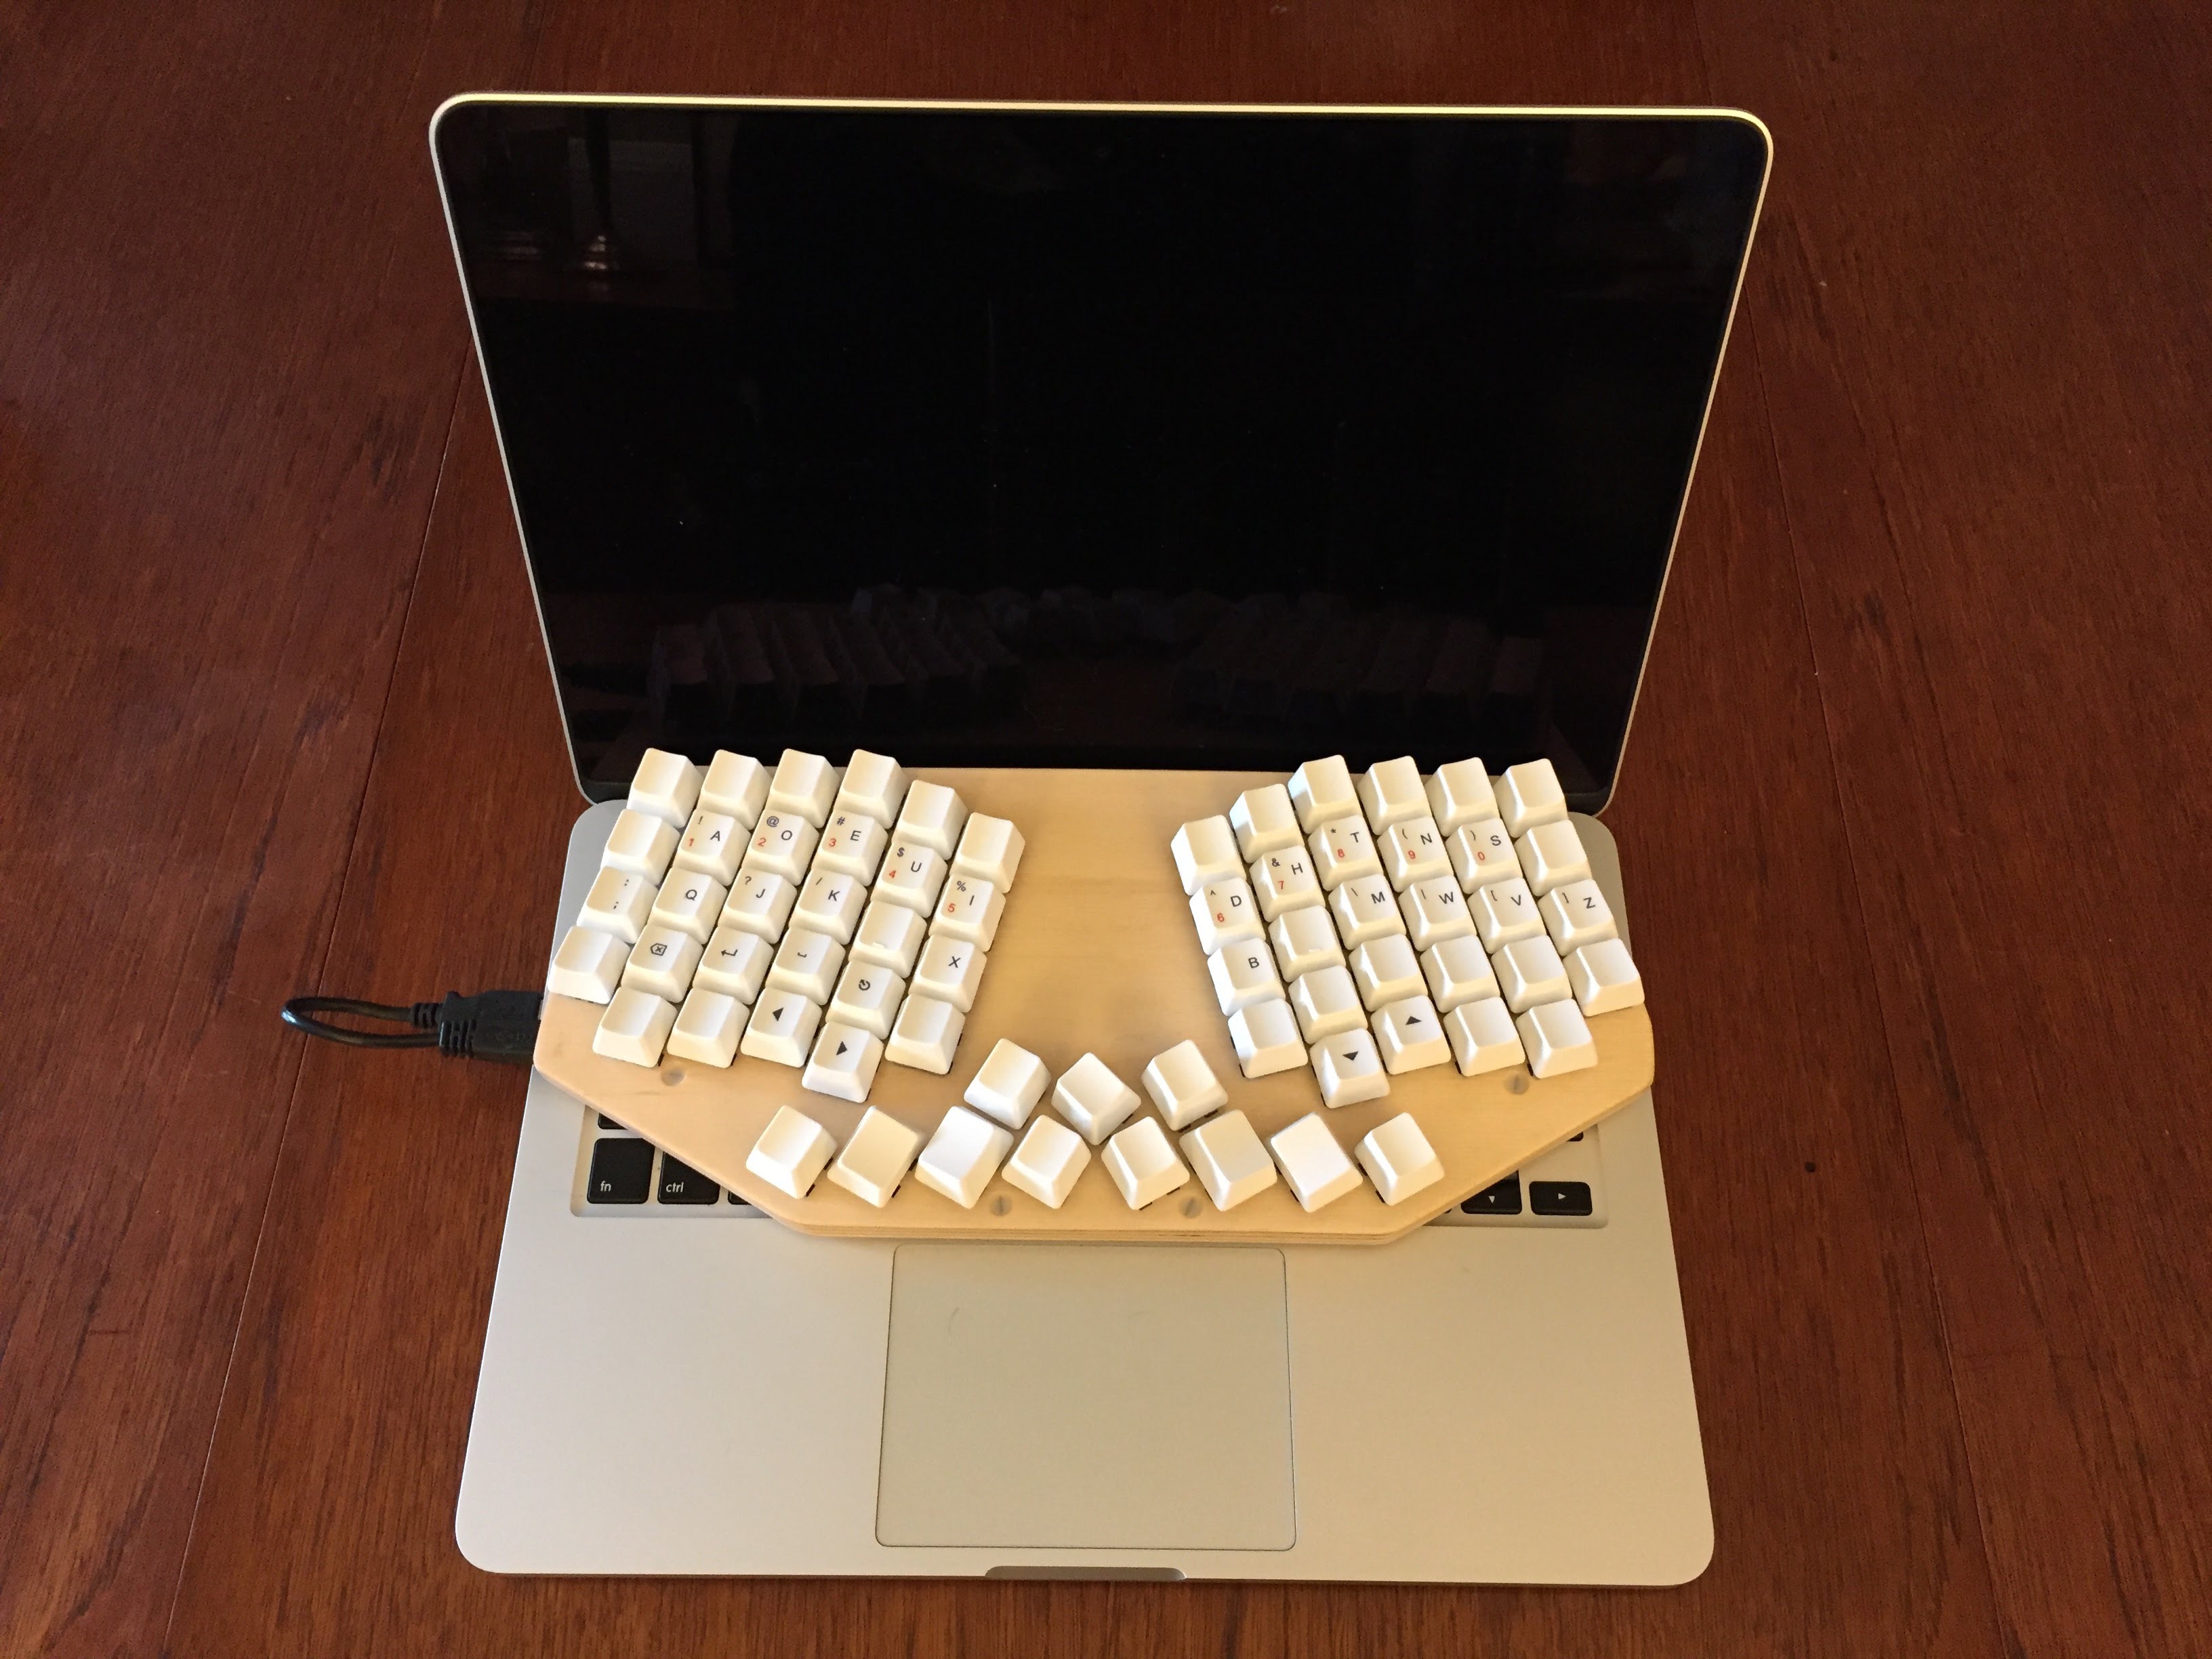 Ergo 67-key keyboard